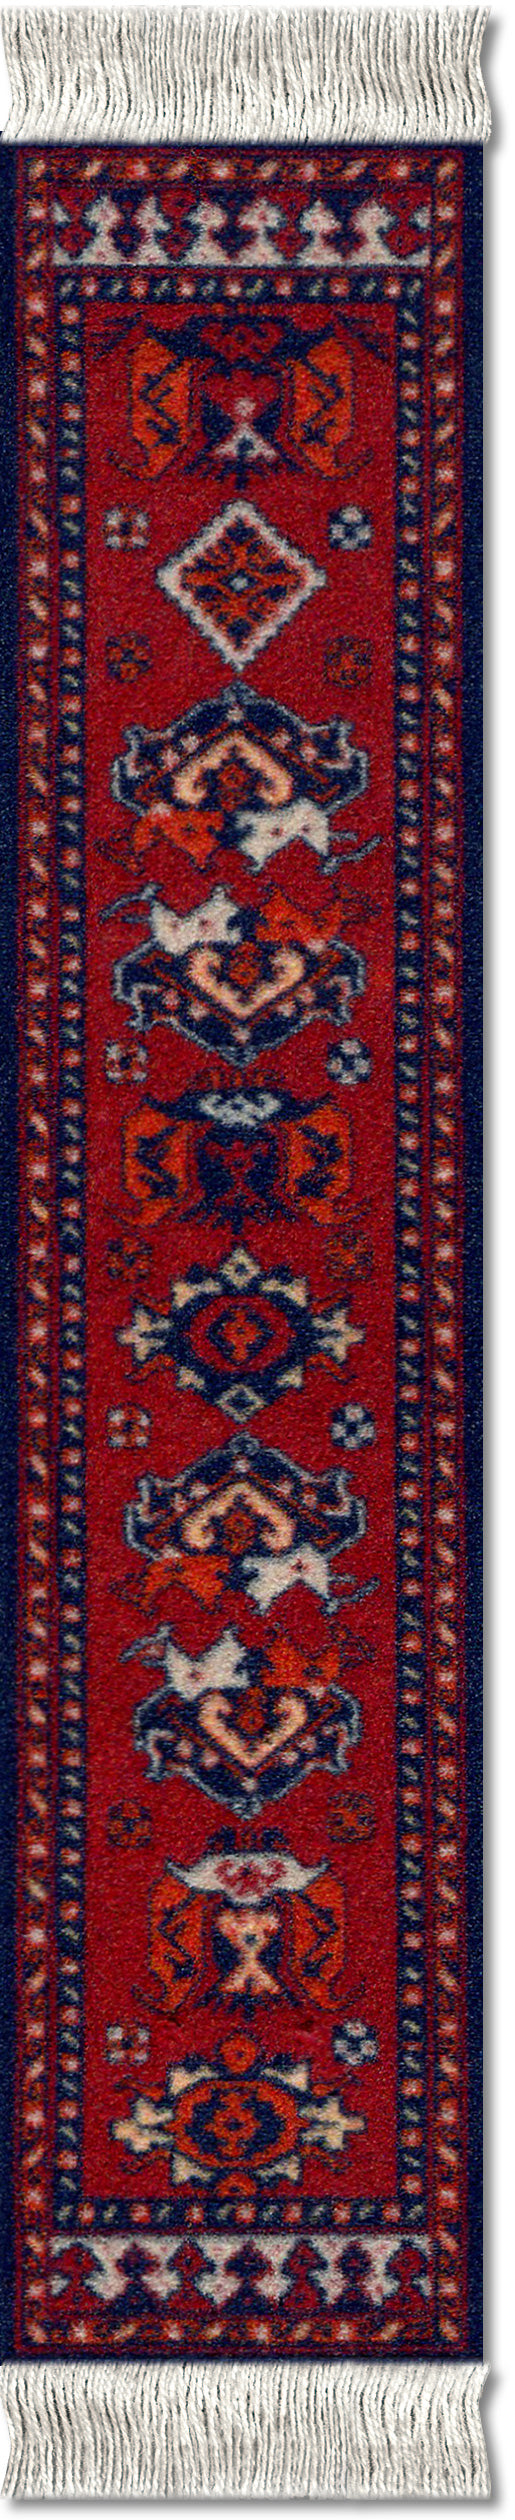 Early Turkmen Book Rug